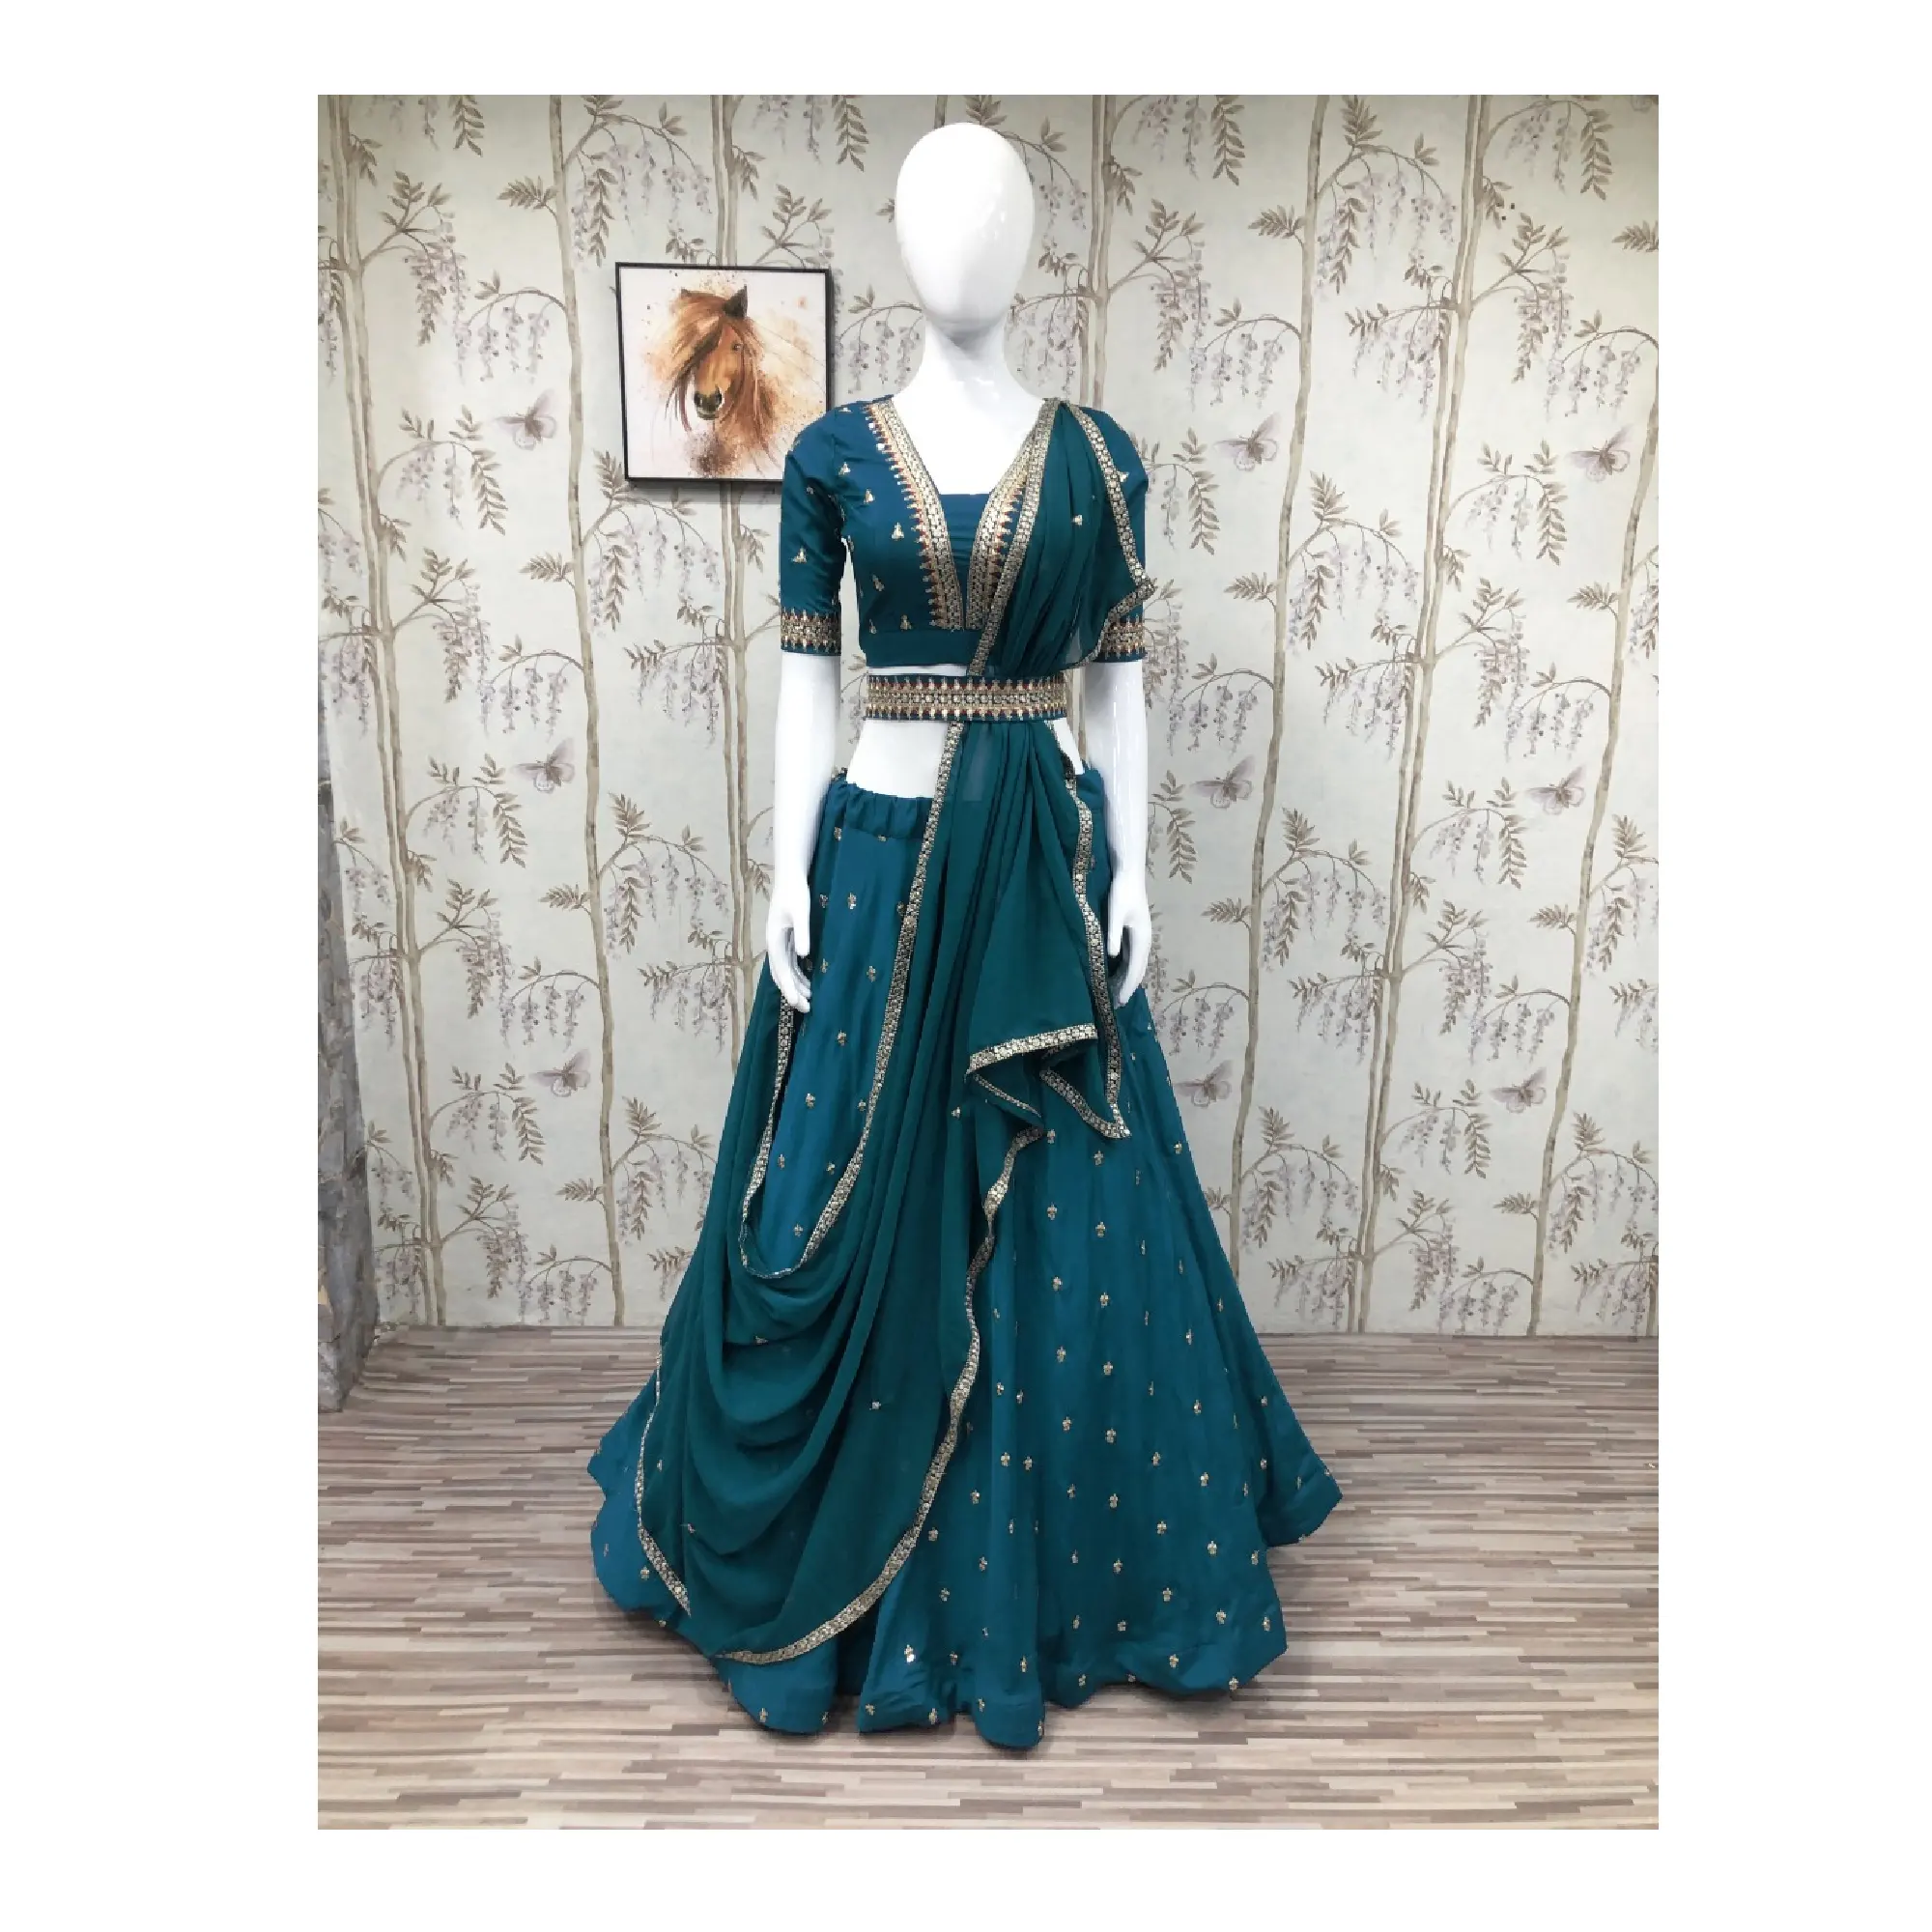 Высококачественная новейшая Дизайнерская одежда для свадьбы и вечеринки, голубой зонтик Rama, стильный Лехенга, Холи, готов носить Лехенга Холи